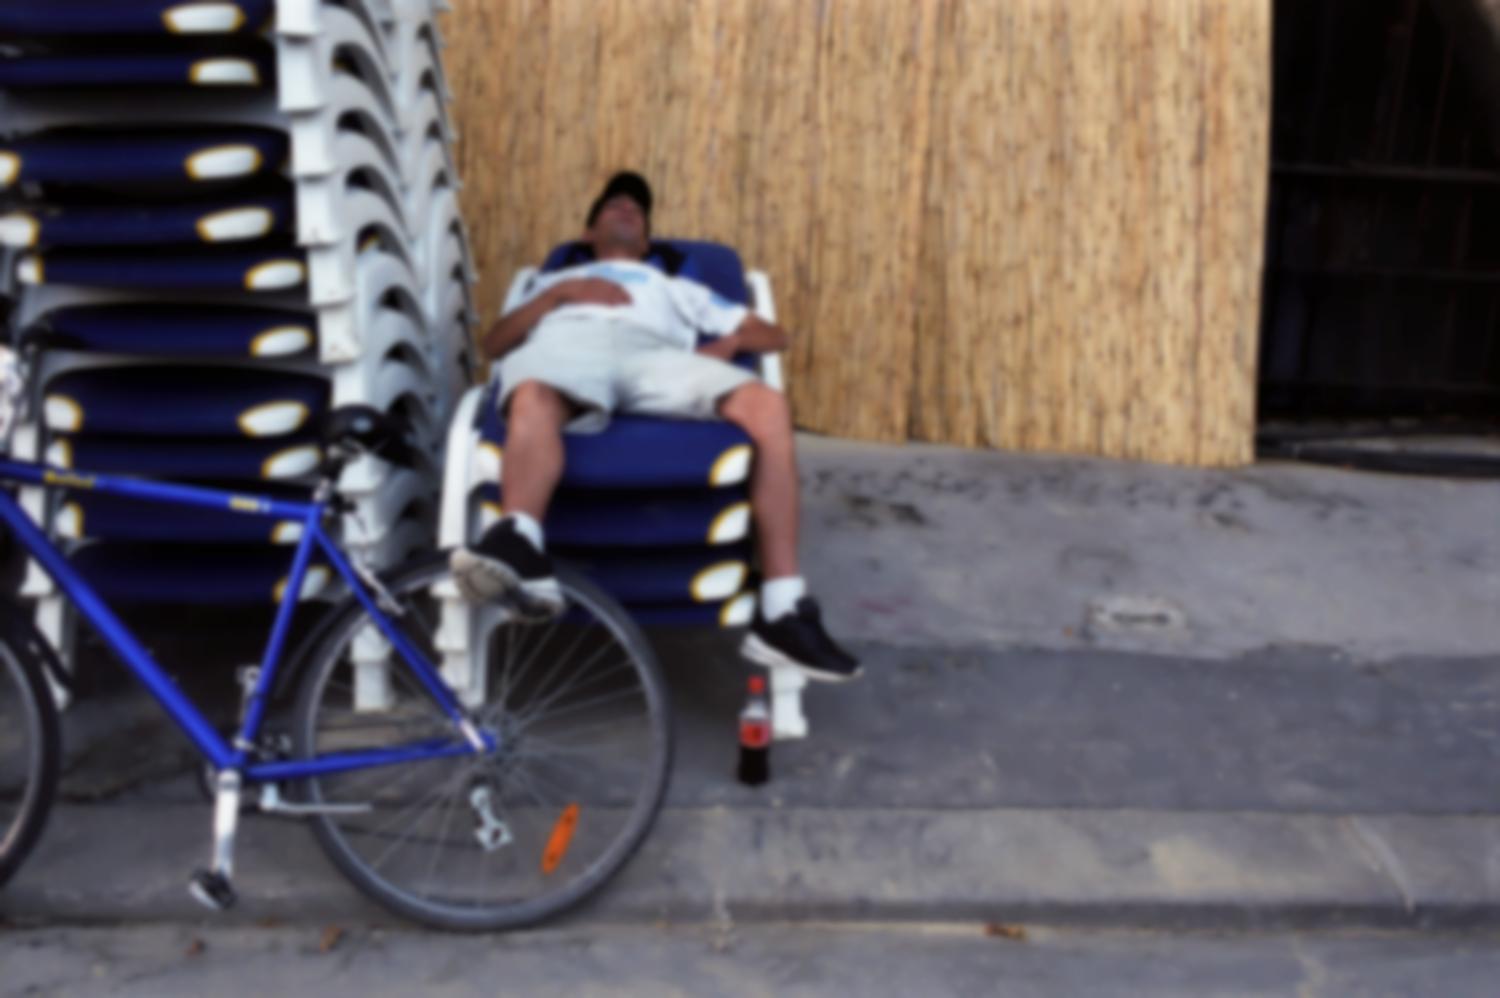 Homme allongé sur une pile de chaises longues, le pied appuyé sur la roue d'un vélo. Paris, août 2003.